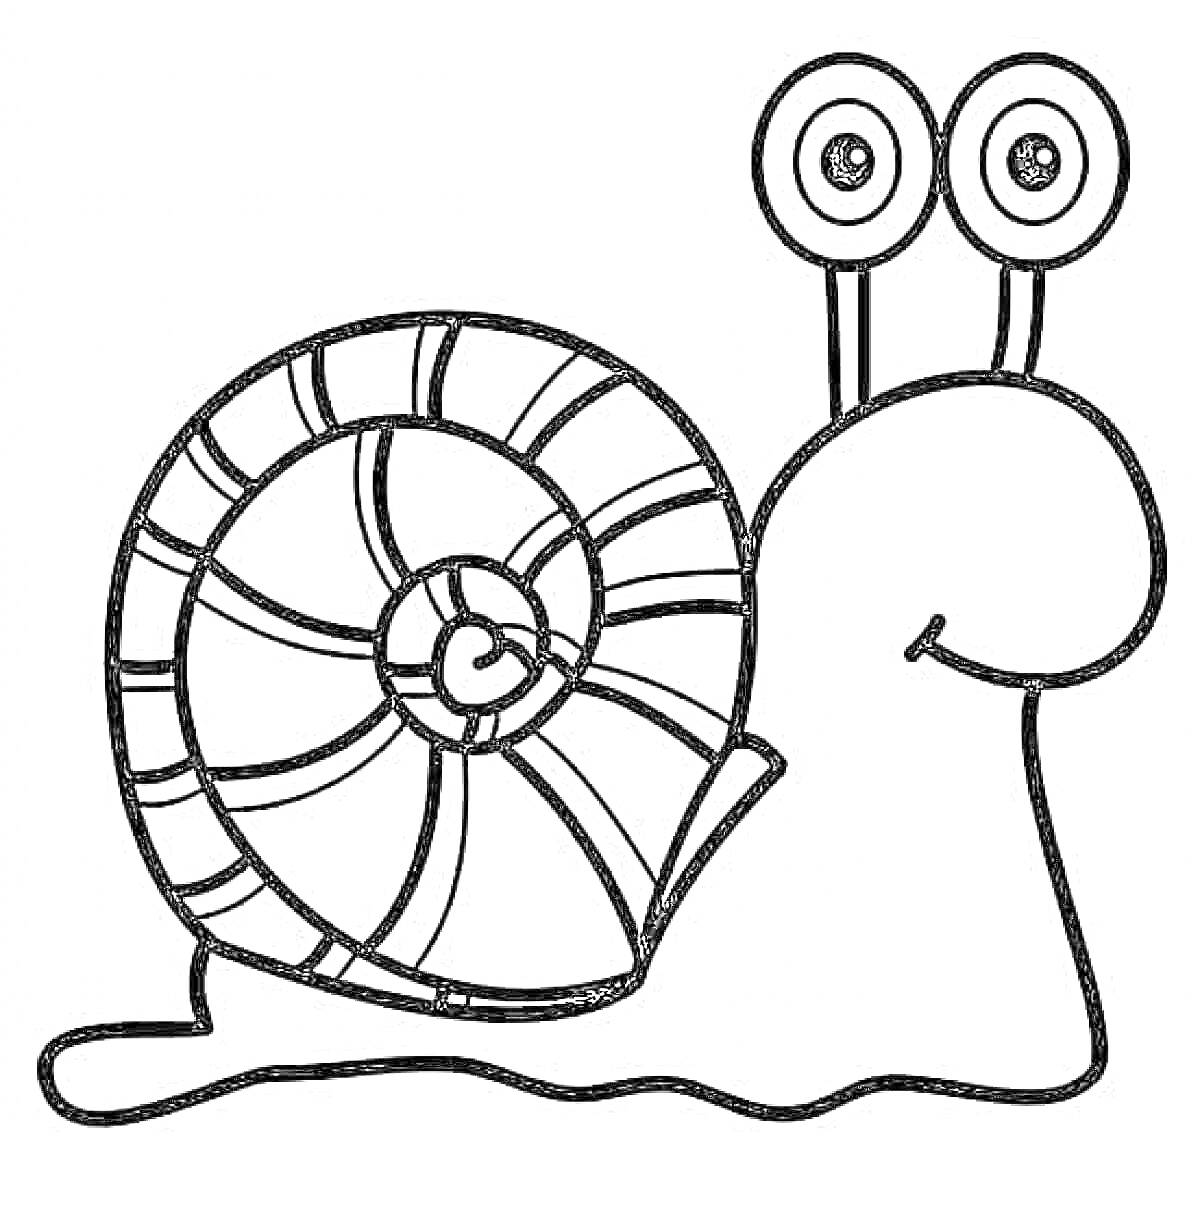 Раскраска Улитка с декоративной спиральной раковиной и двумя глазами на длинных стебельках